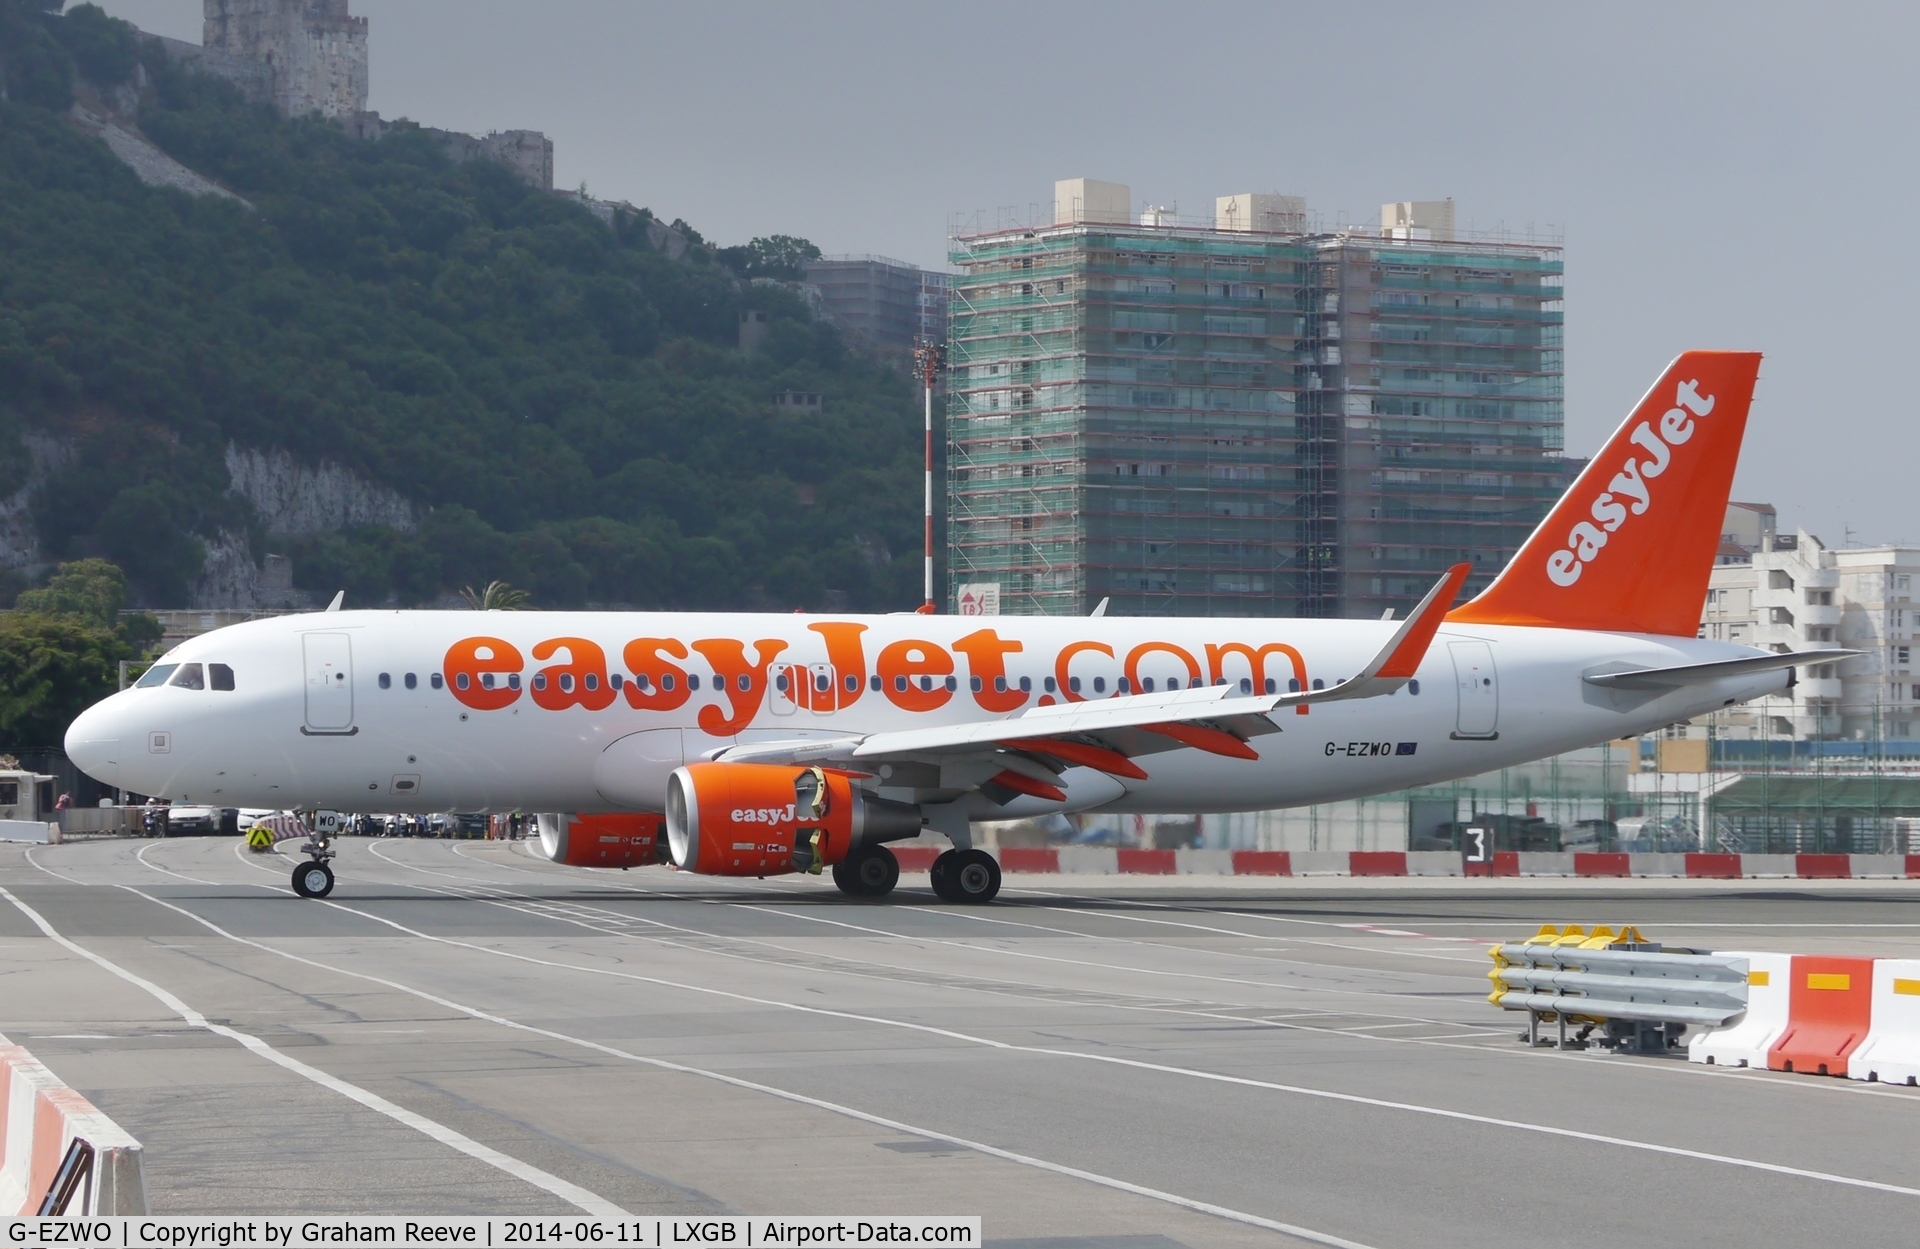 G-EZWO, 2013 Airbus A320-214 C/N 5785, Landing at Gibraltar.